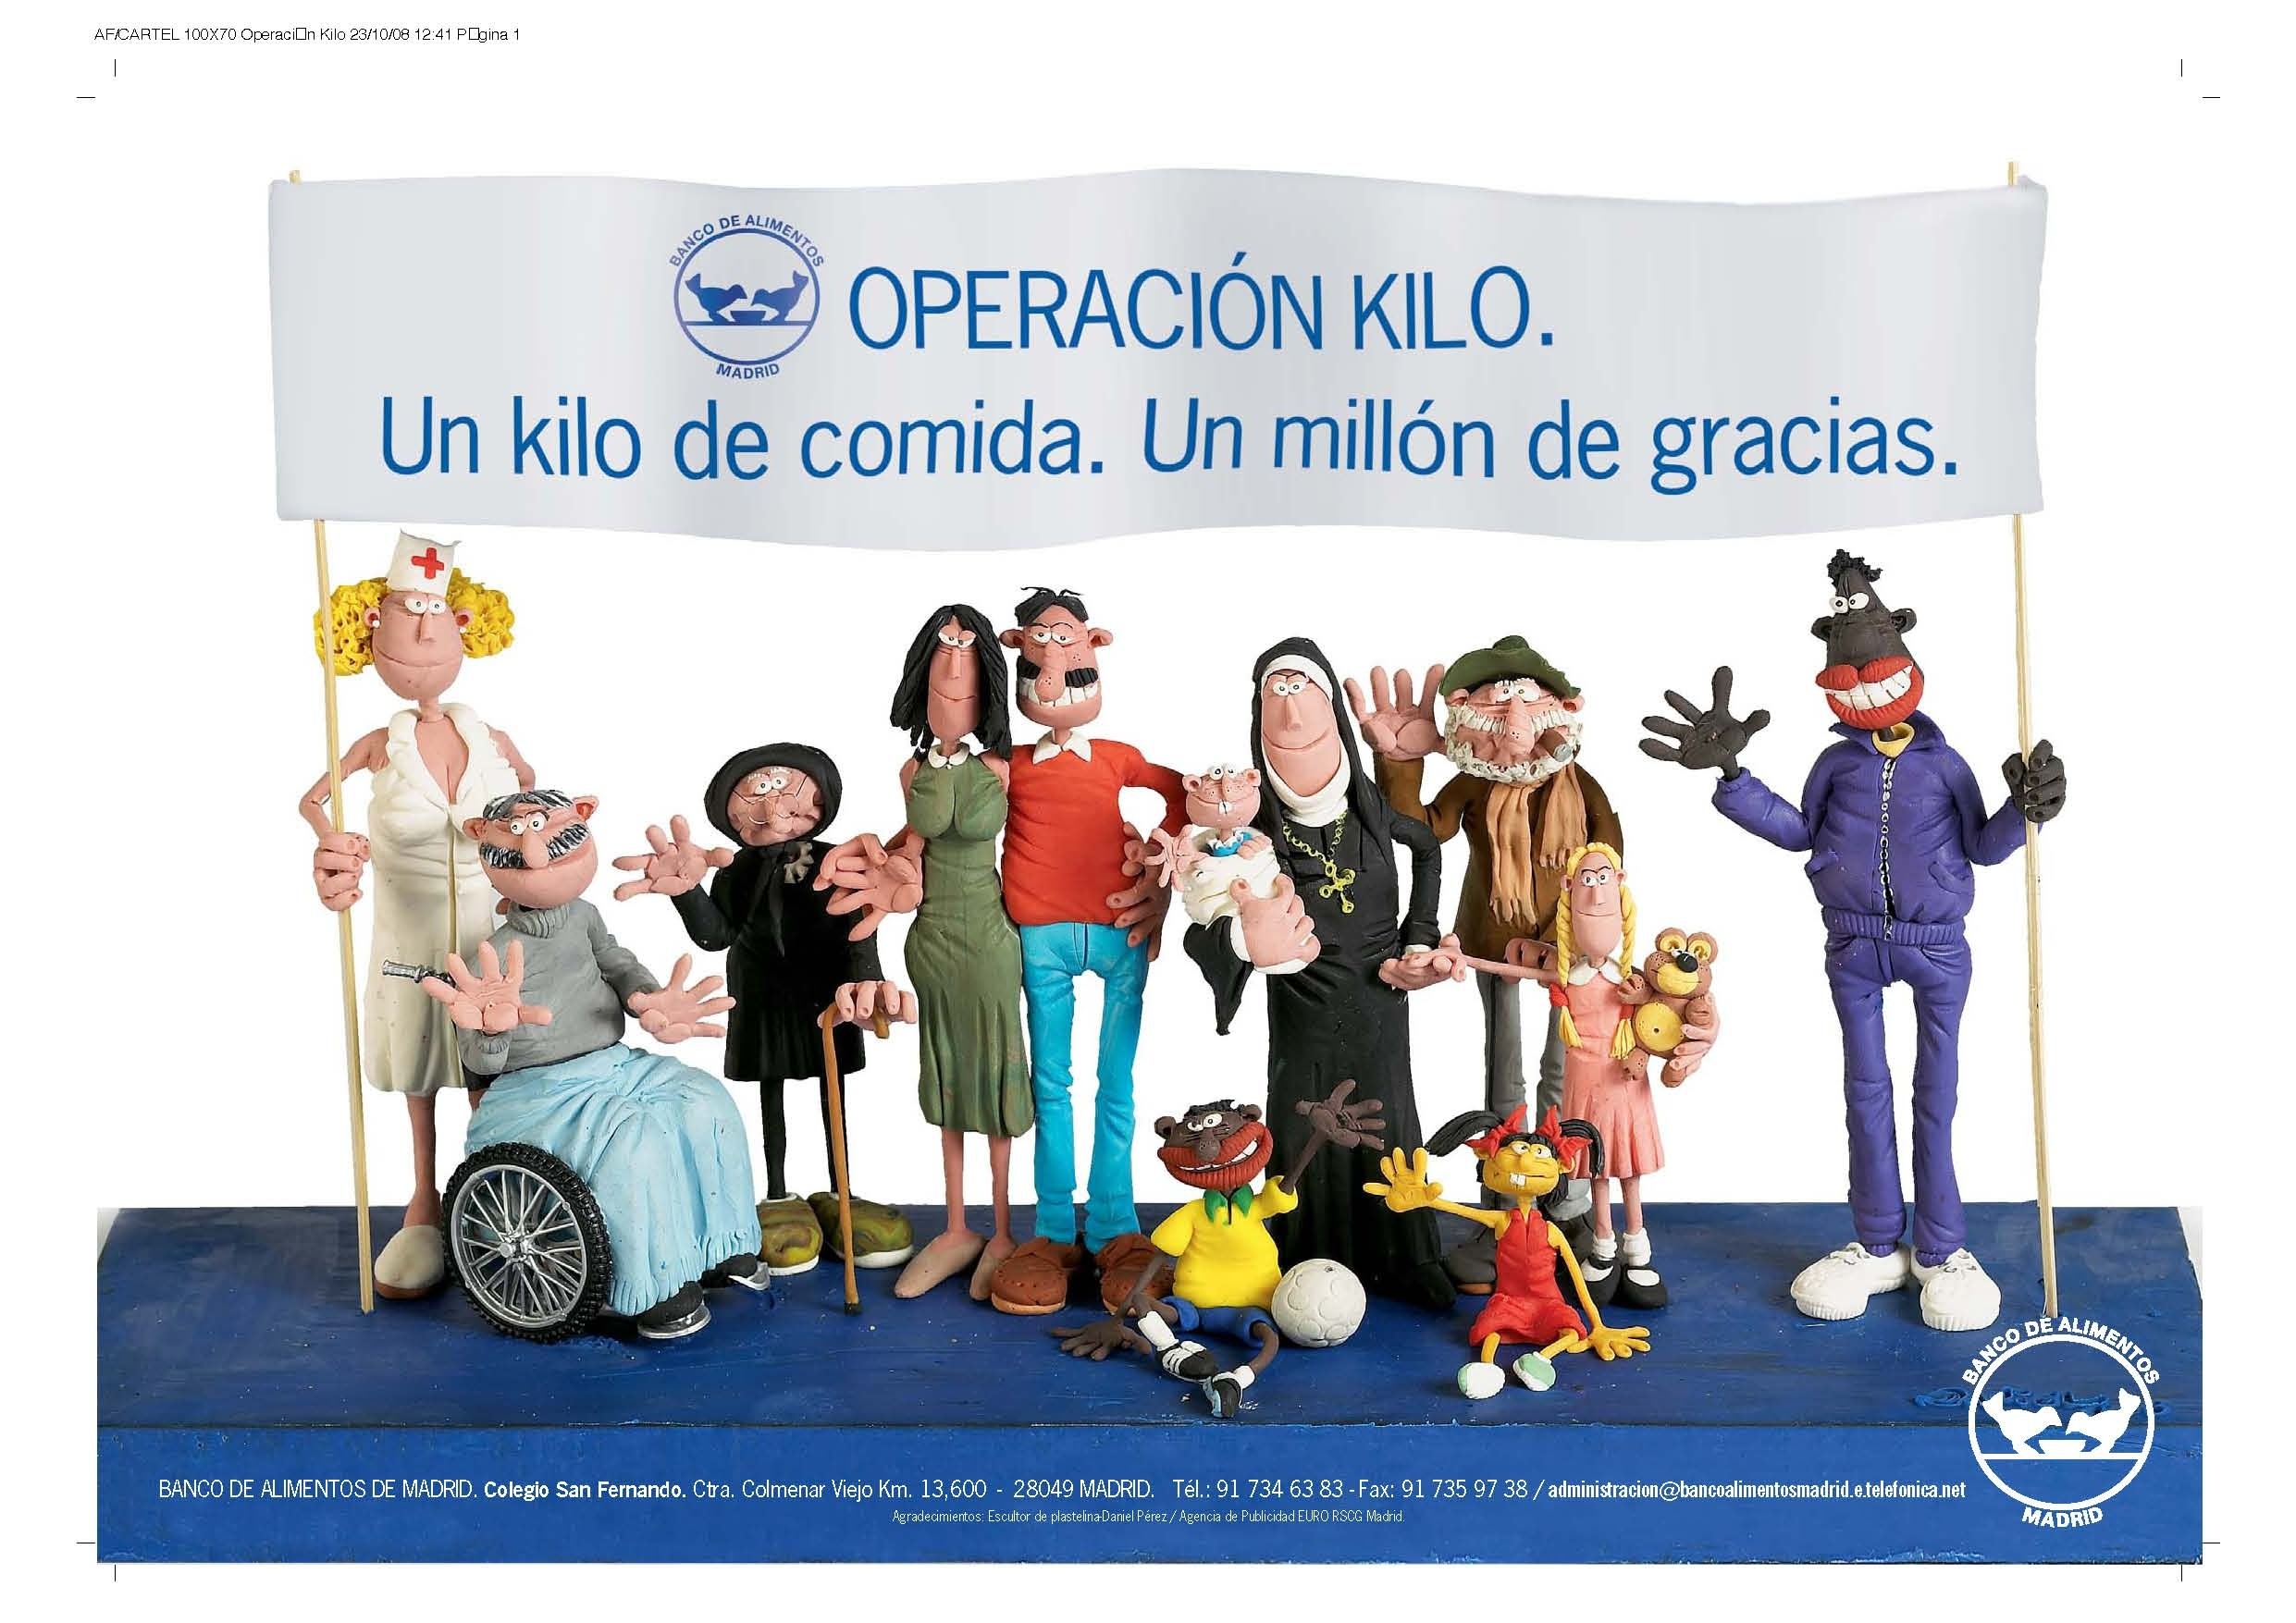 La Fundación Parques Reunidos acogerá la campaña »Operación kilo»